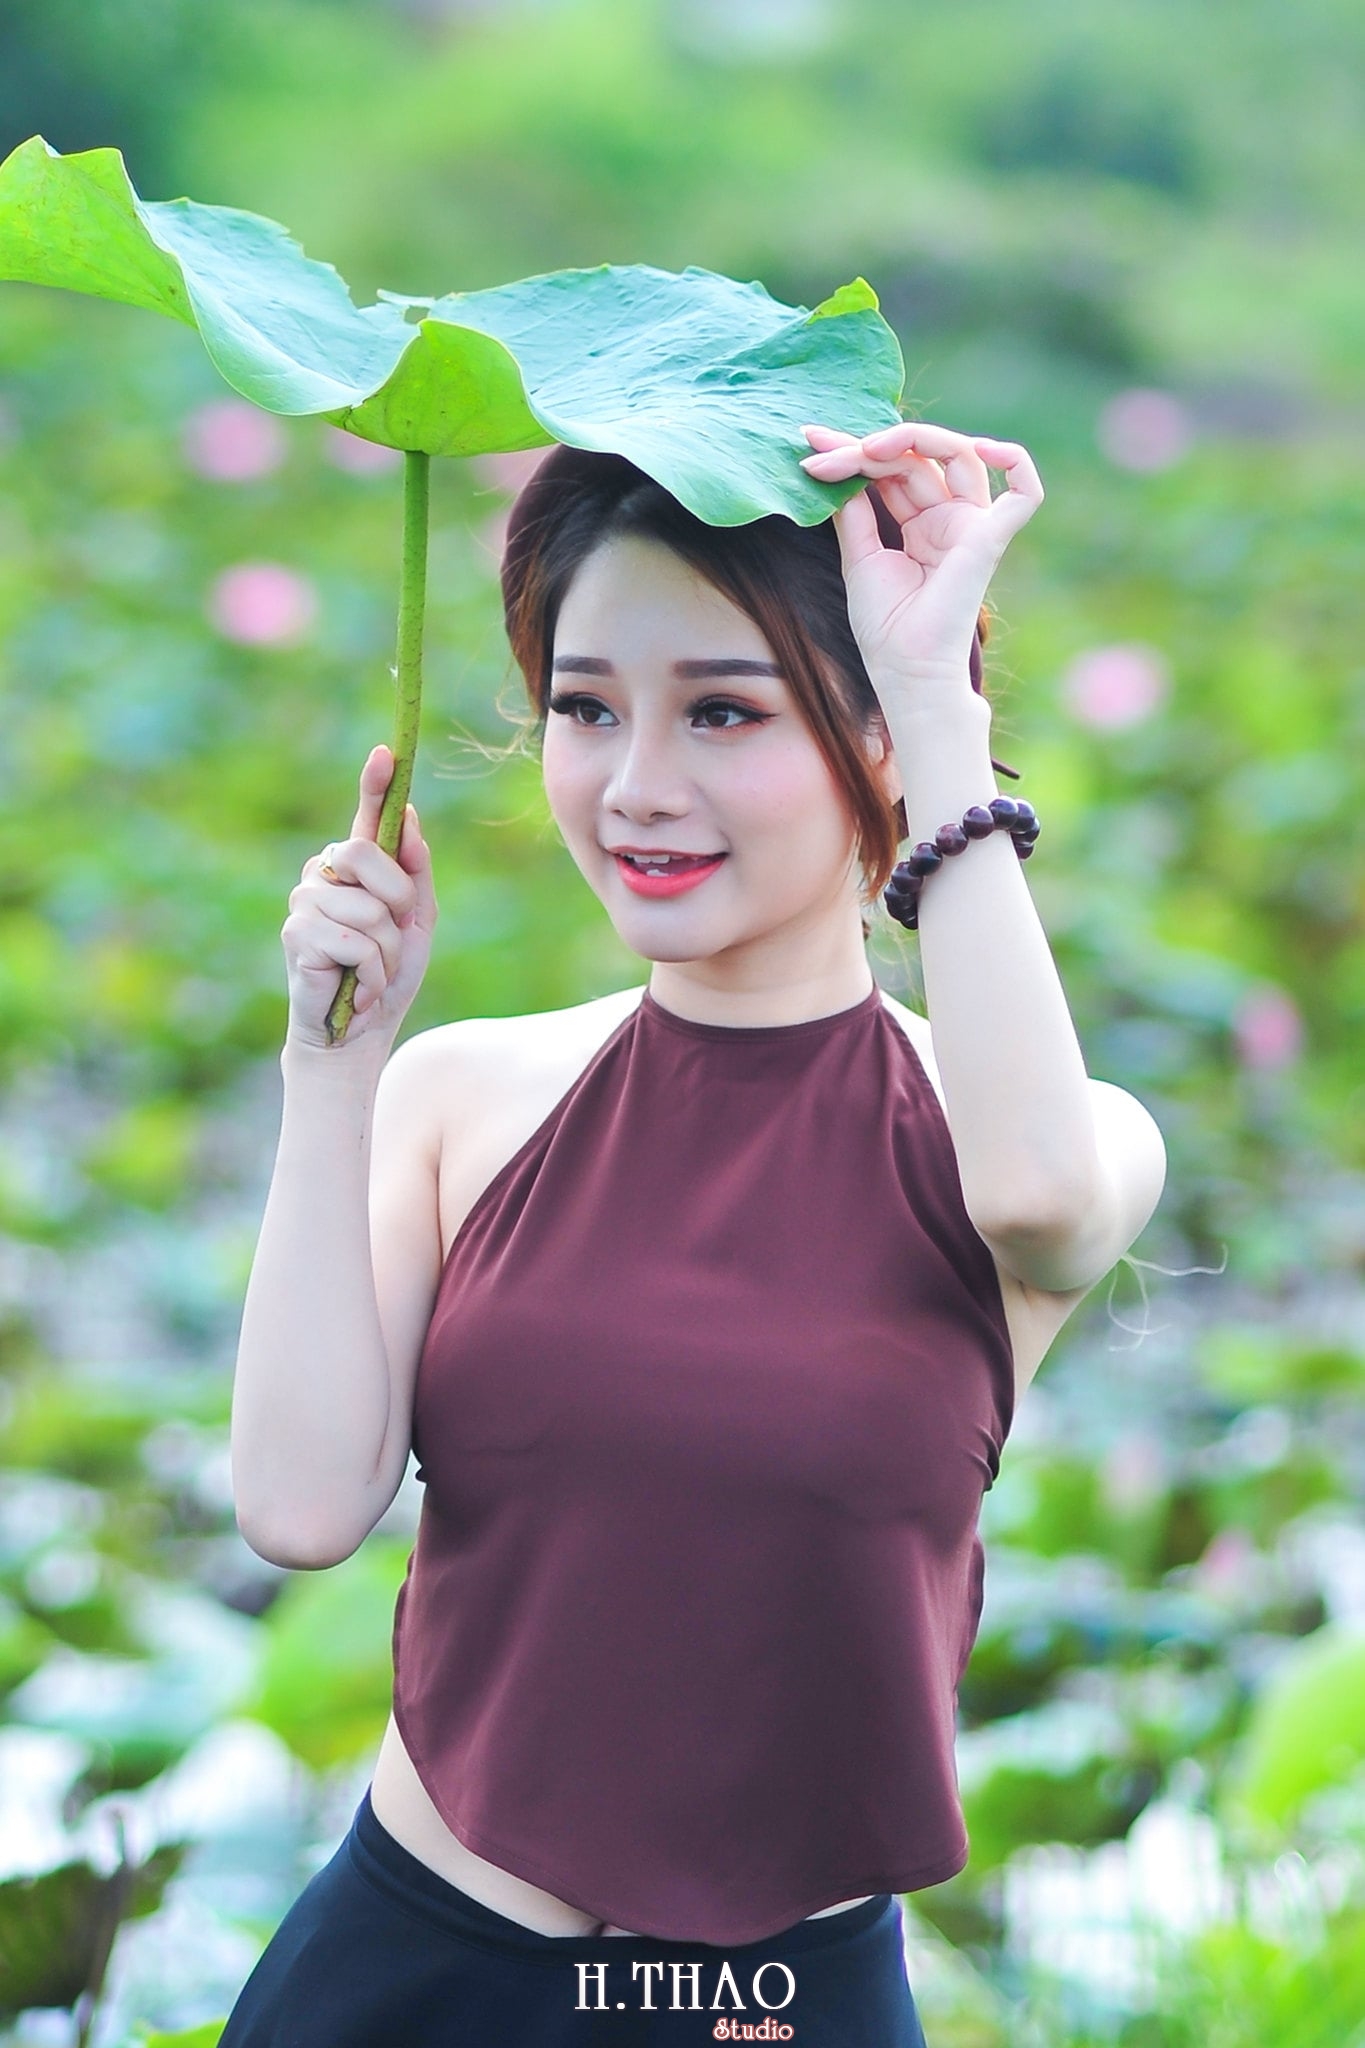 anh sen 6 - Bộ ảnh Sen với áo yếm đẹp nhẹ nhàng - HThao Studio